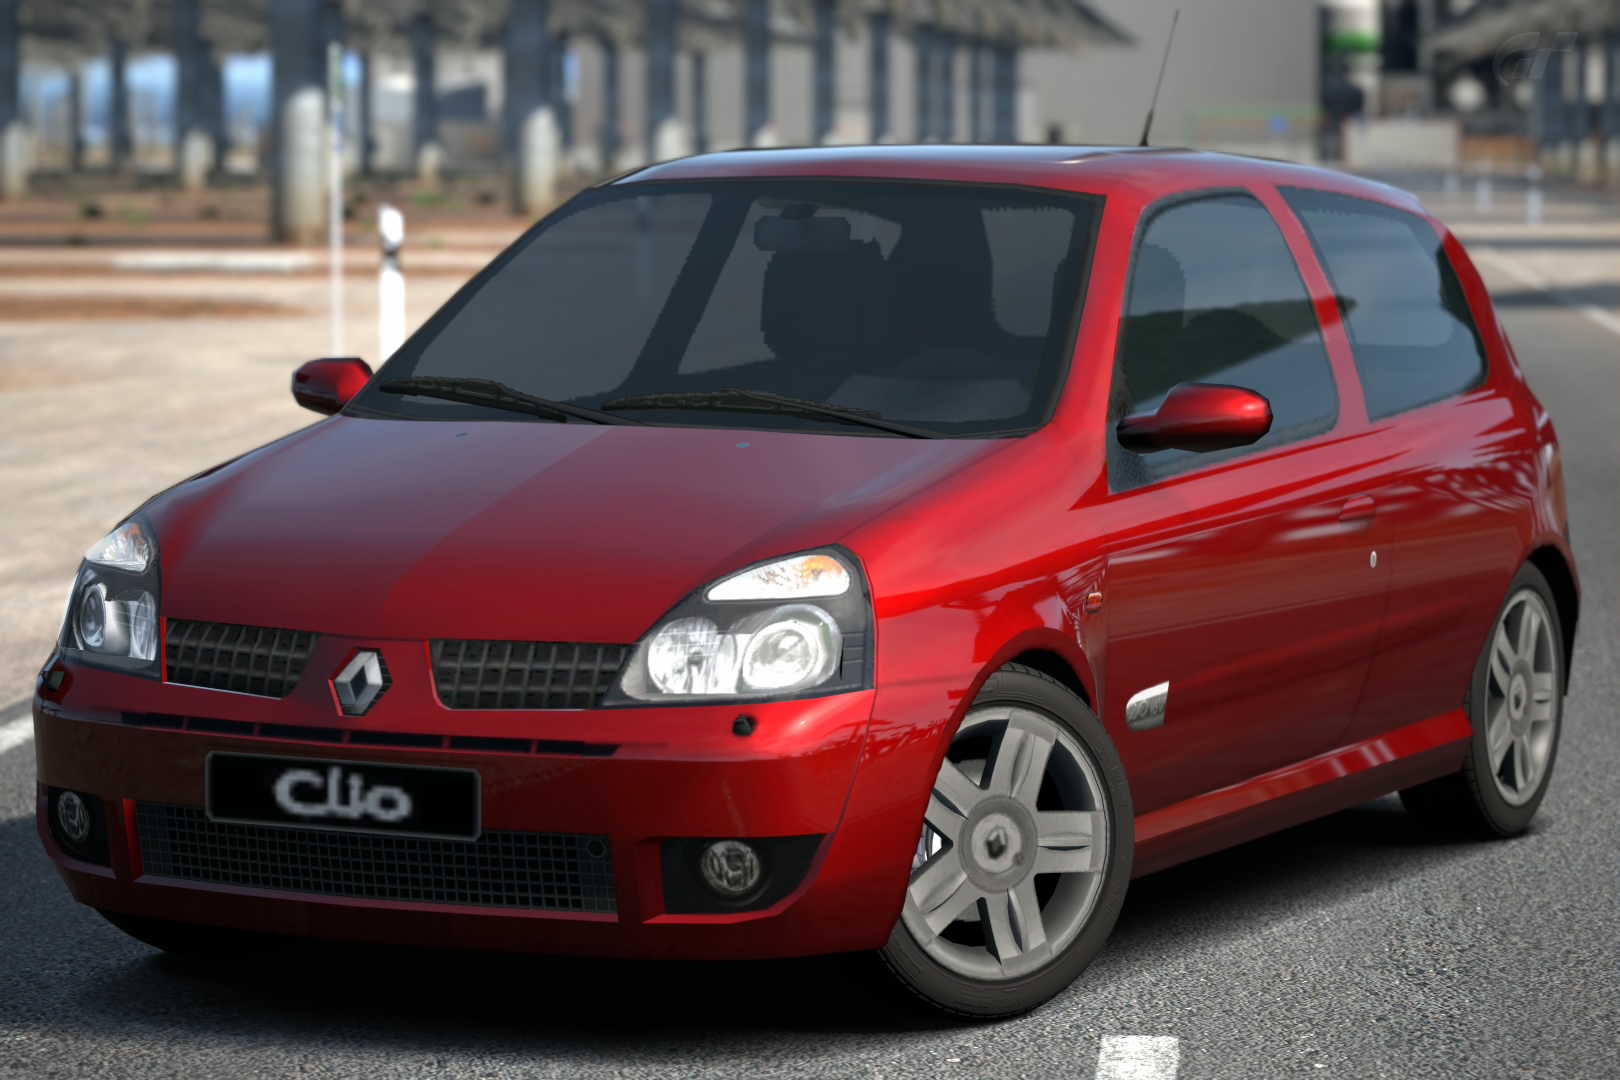 RENAULT Clio SPORT 2.0 16V - Munain Motors